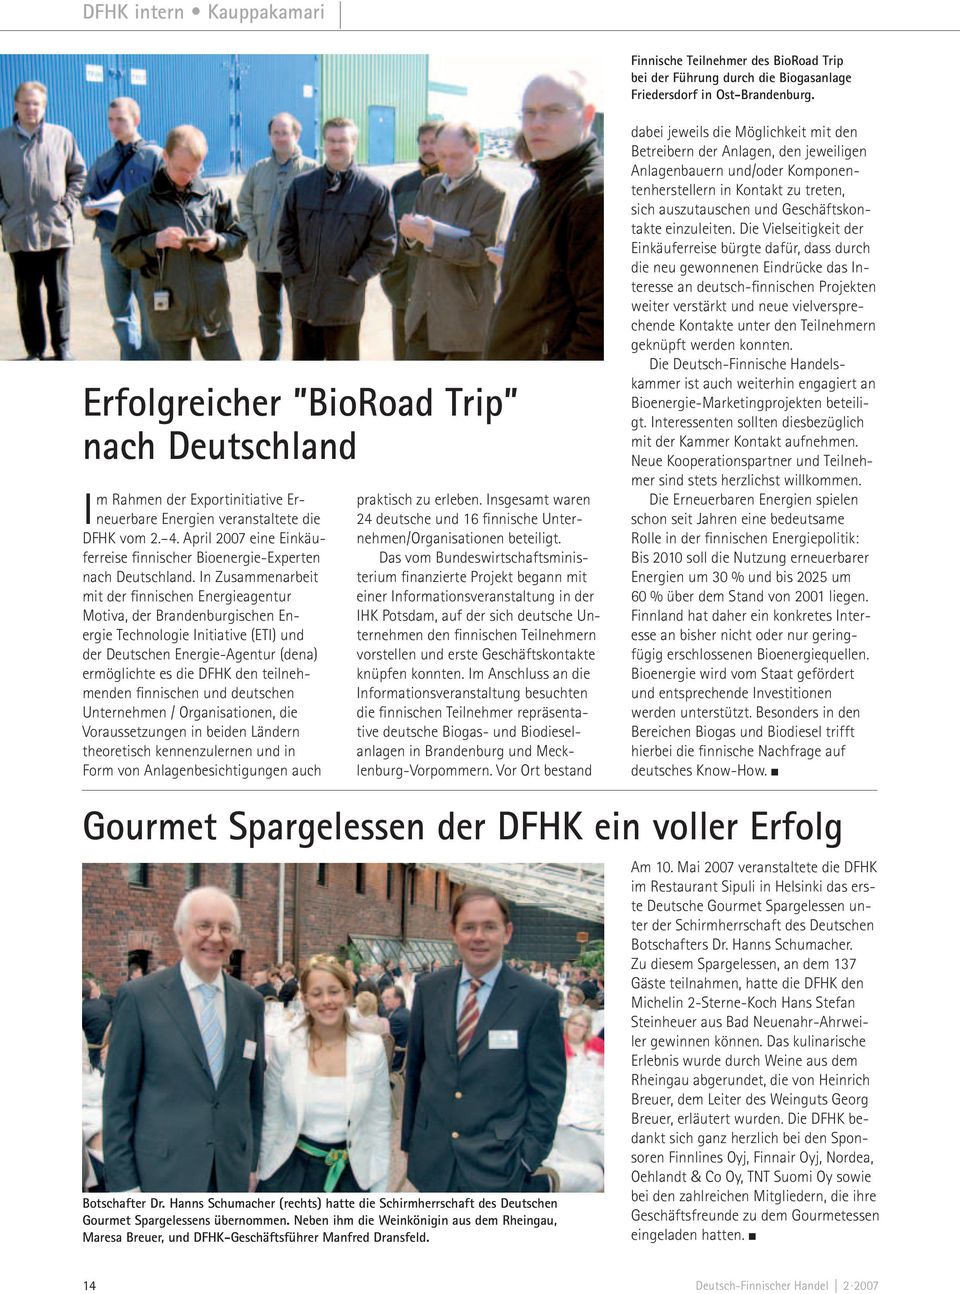 April 2007 eine Einkäuferreise finnischer Bioenergie-Experten nach Deutschland.